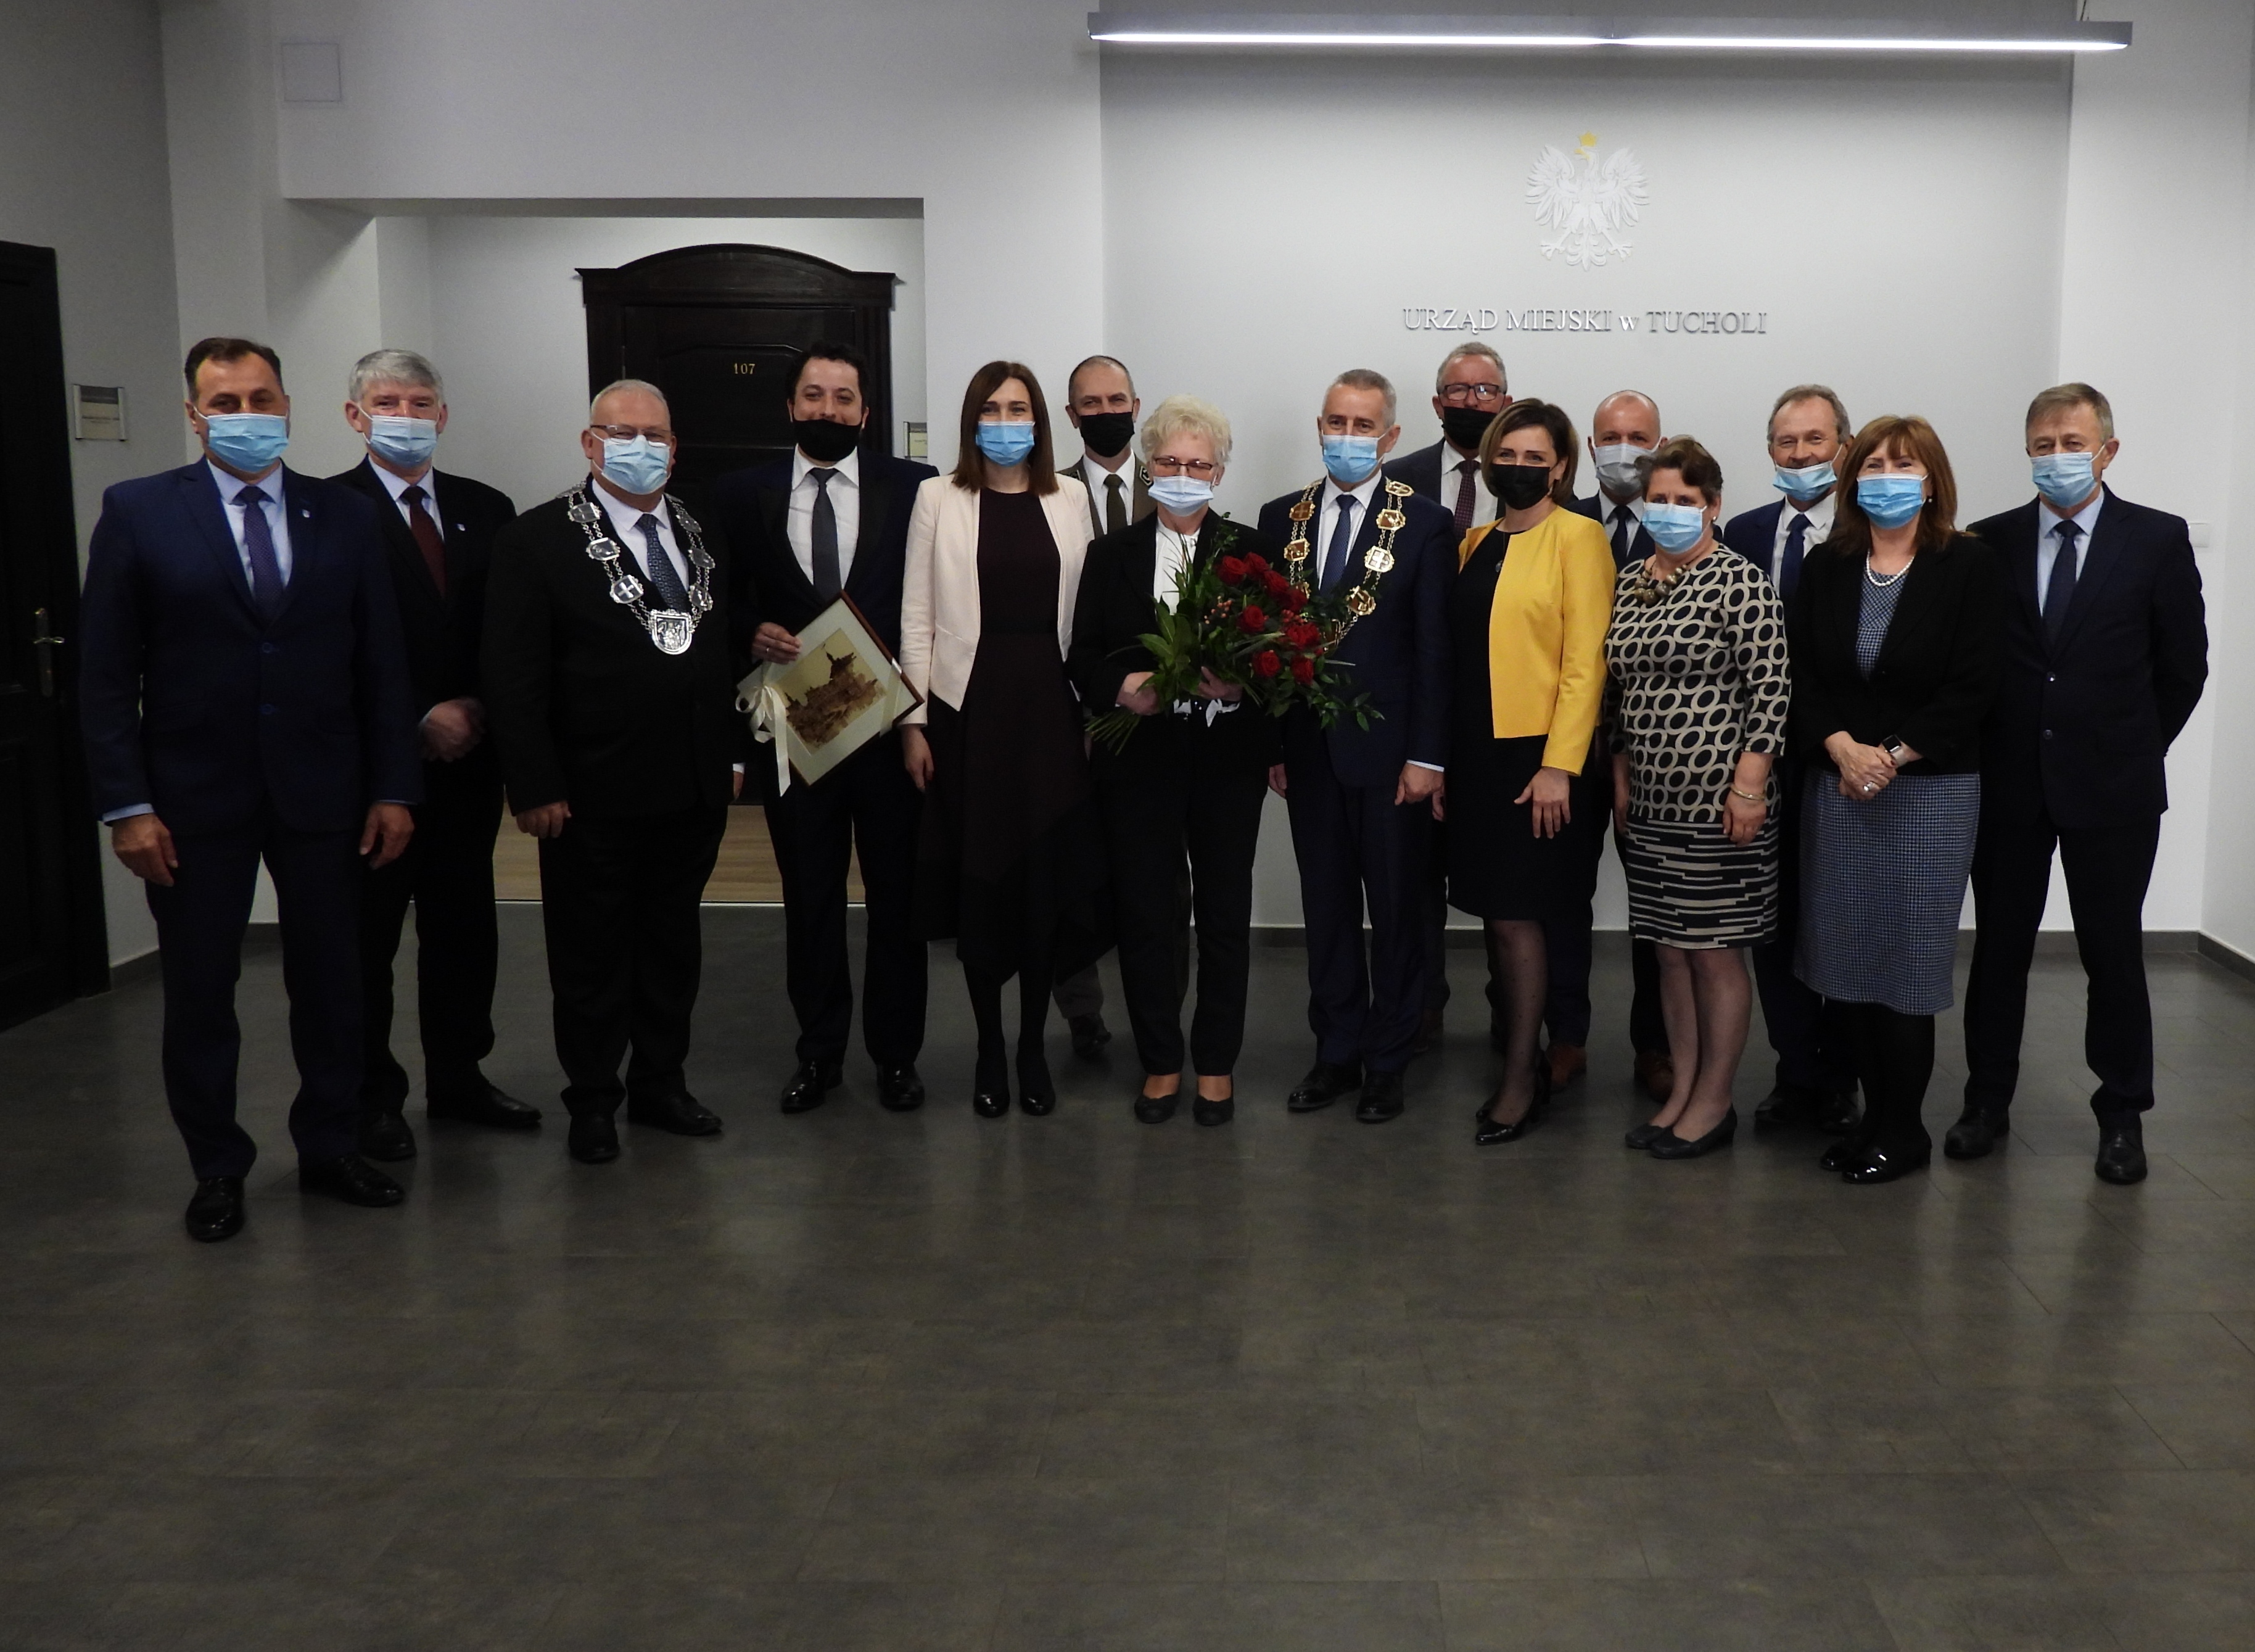 Wspólne zdjęcie radnych, burmistrza i zastępcy burmistrza Tucholi